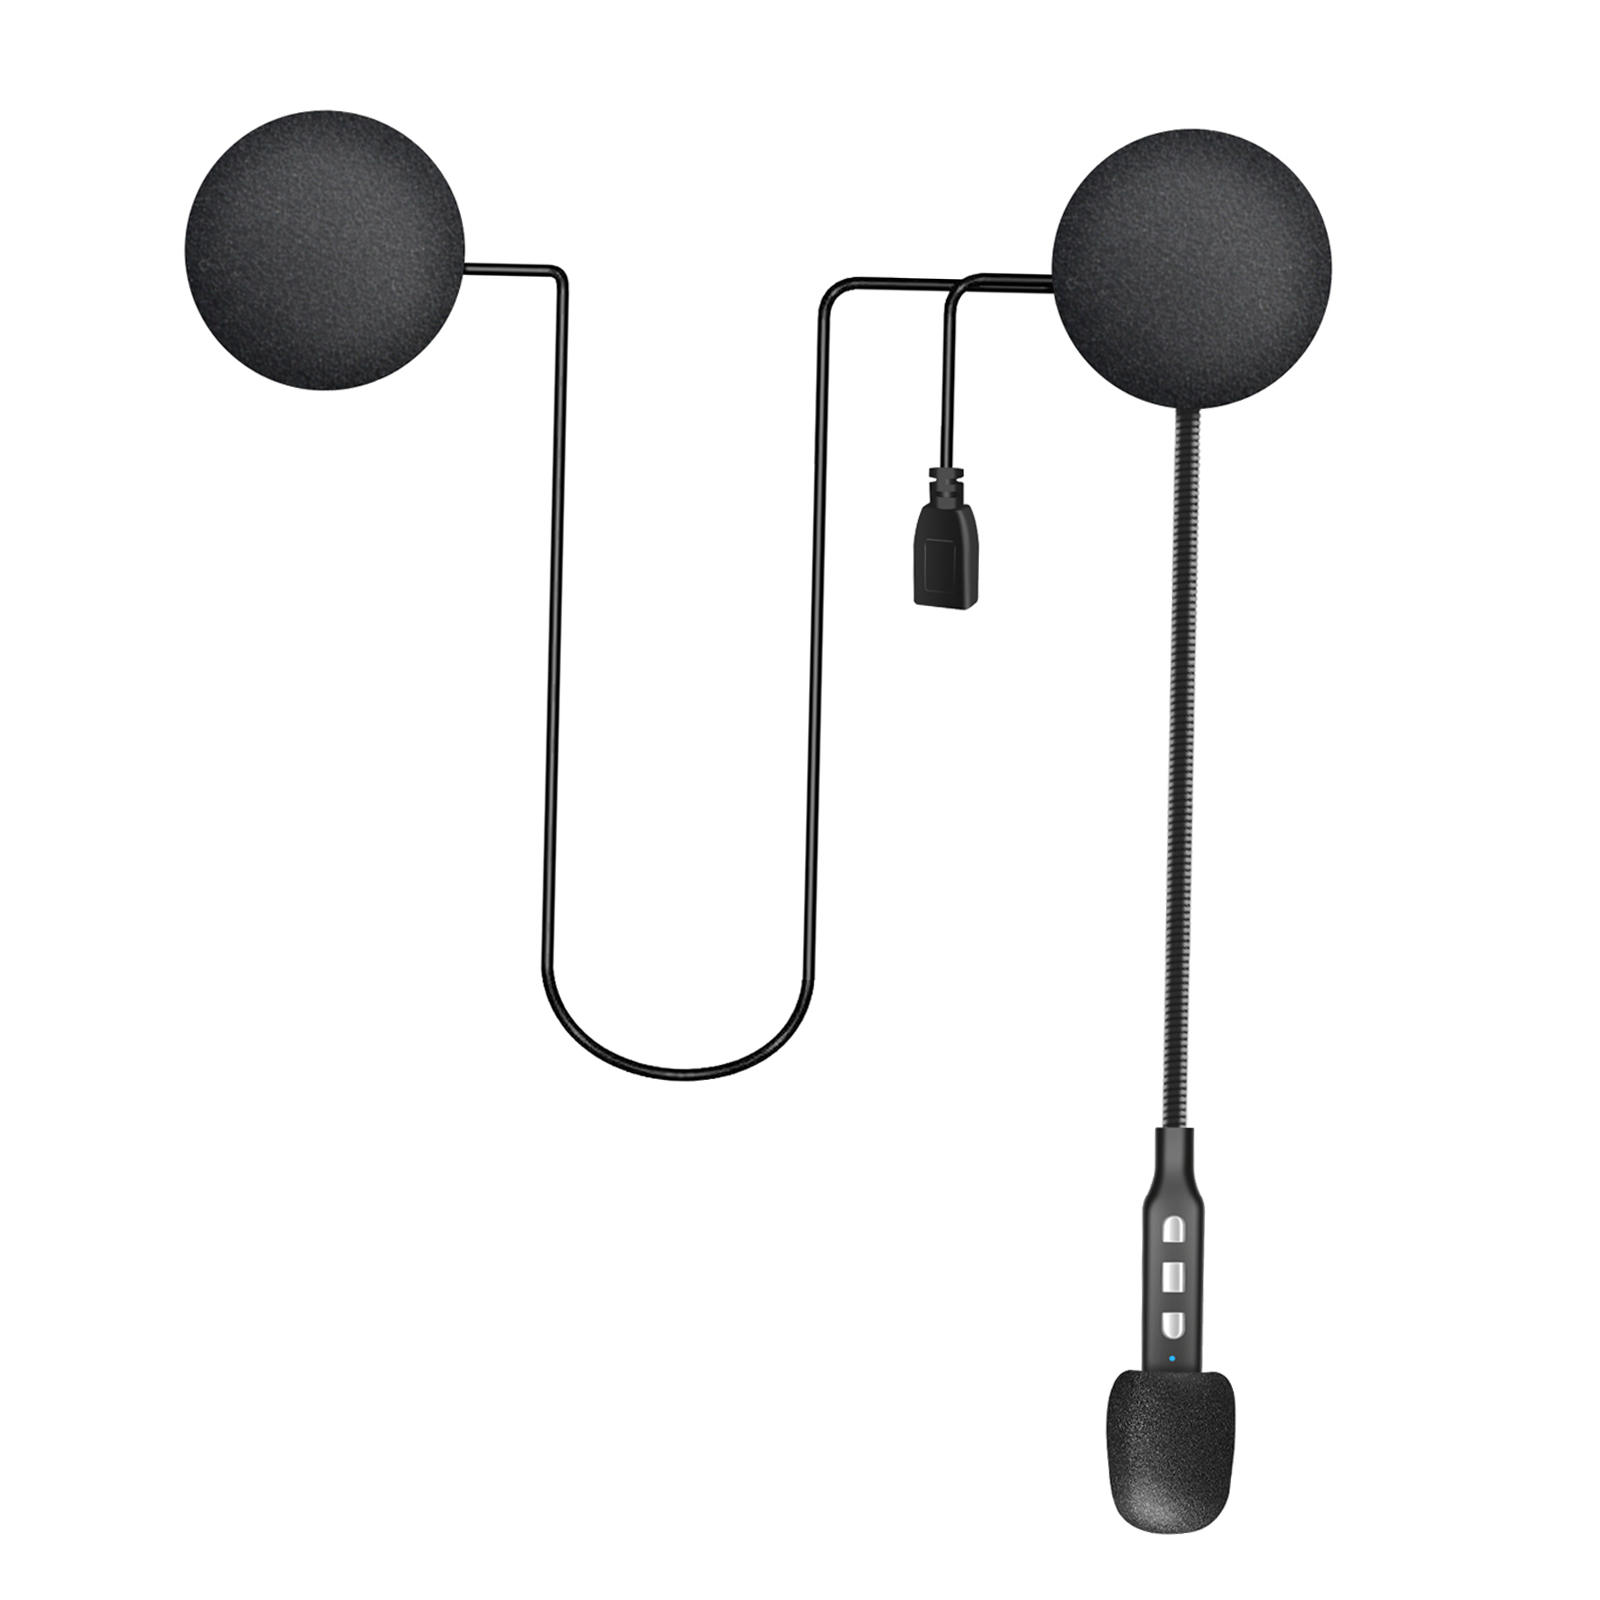 Draadloze Motorhelm Headset Smartphone Anti-Interferentie Speaker Bluetooth Hoofdtelefoon Voor Paardrijden Skiën Ruisonderdrukking